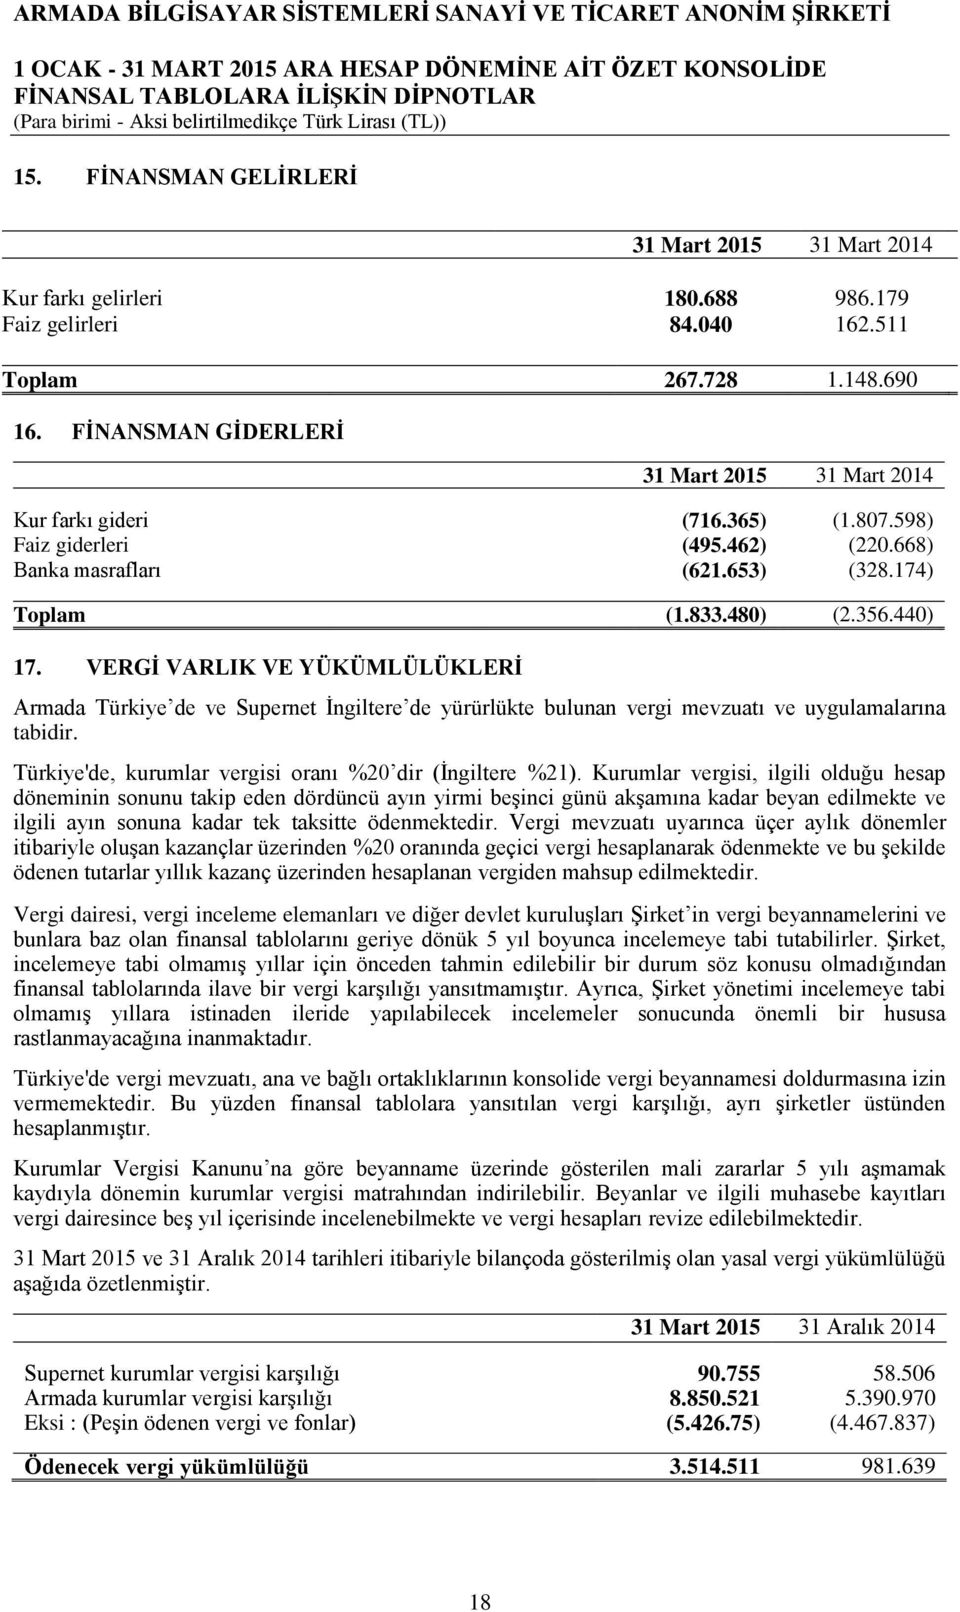 VERGĠ VARLIK VE YÜKÜMLÜLÜKLERĠ Armada Türkiye de ve Supernet Ġngiltere de yürürlükte bulunan vergi mevzuatı ve uygulamalarına tabidir. Türkiye'de, kurumlar vergisi oranı %20 dir (Ġngiltere %21).